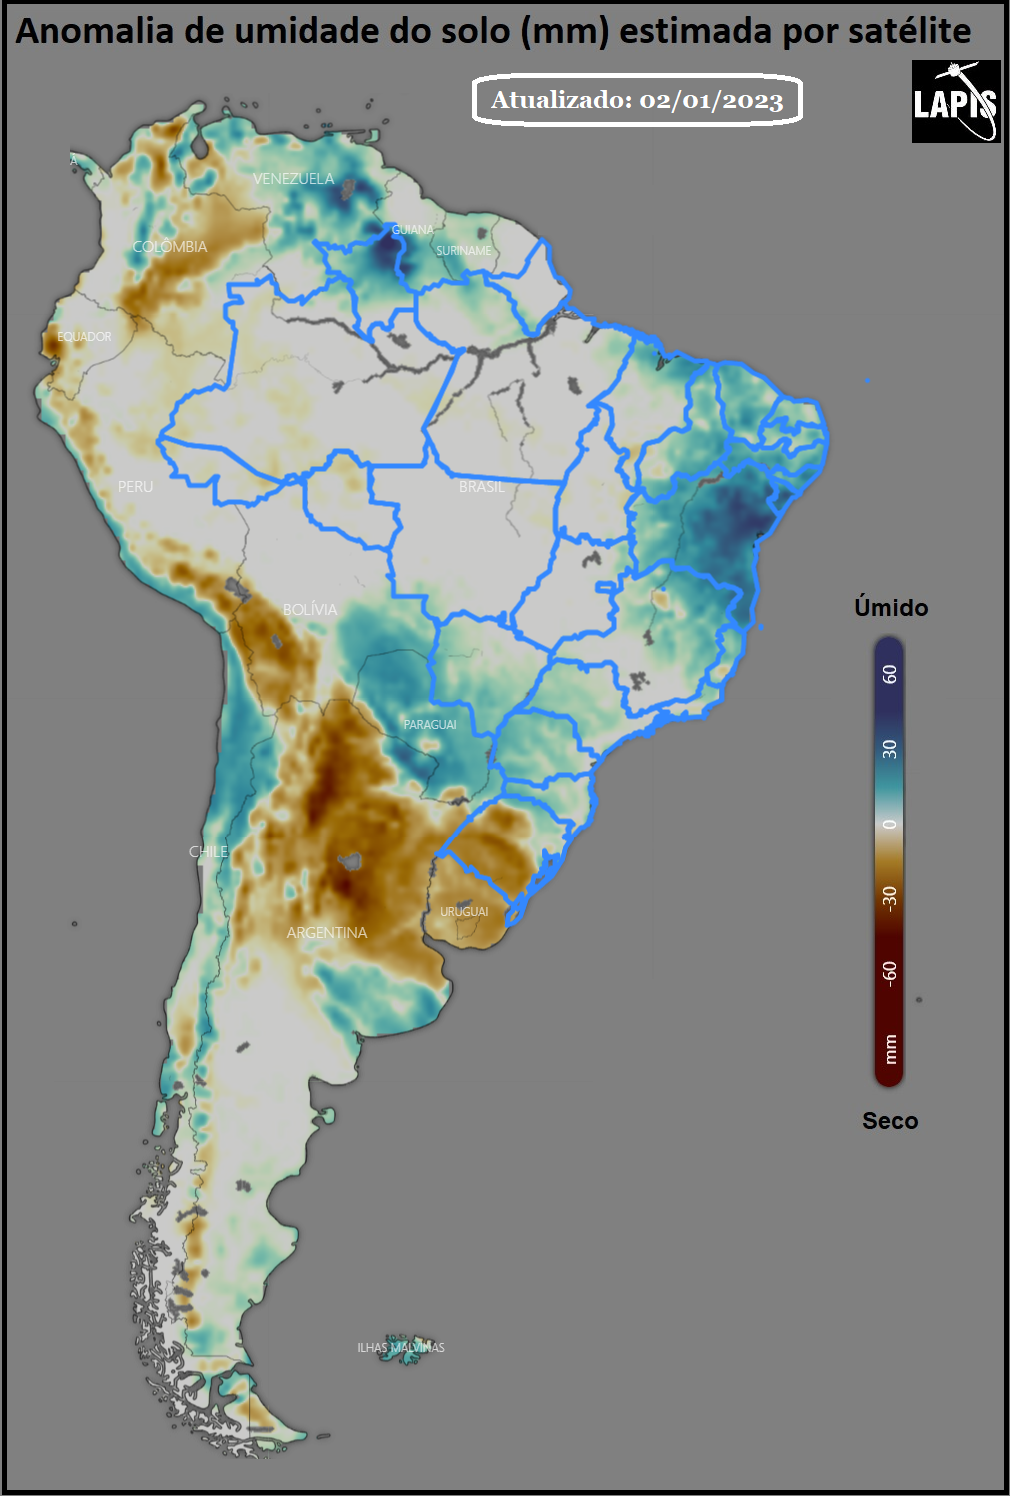 Mapa da umidade do solo, processado no QGIS